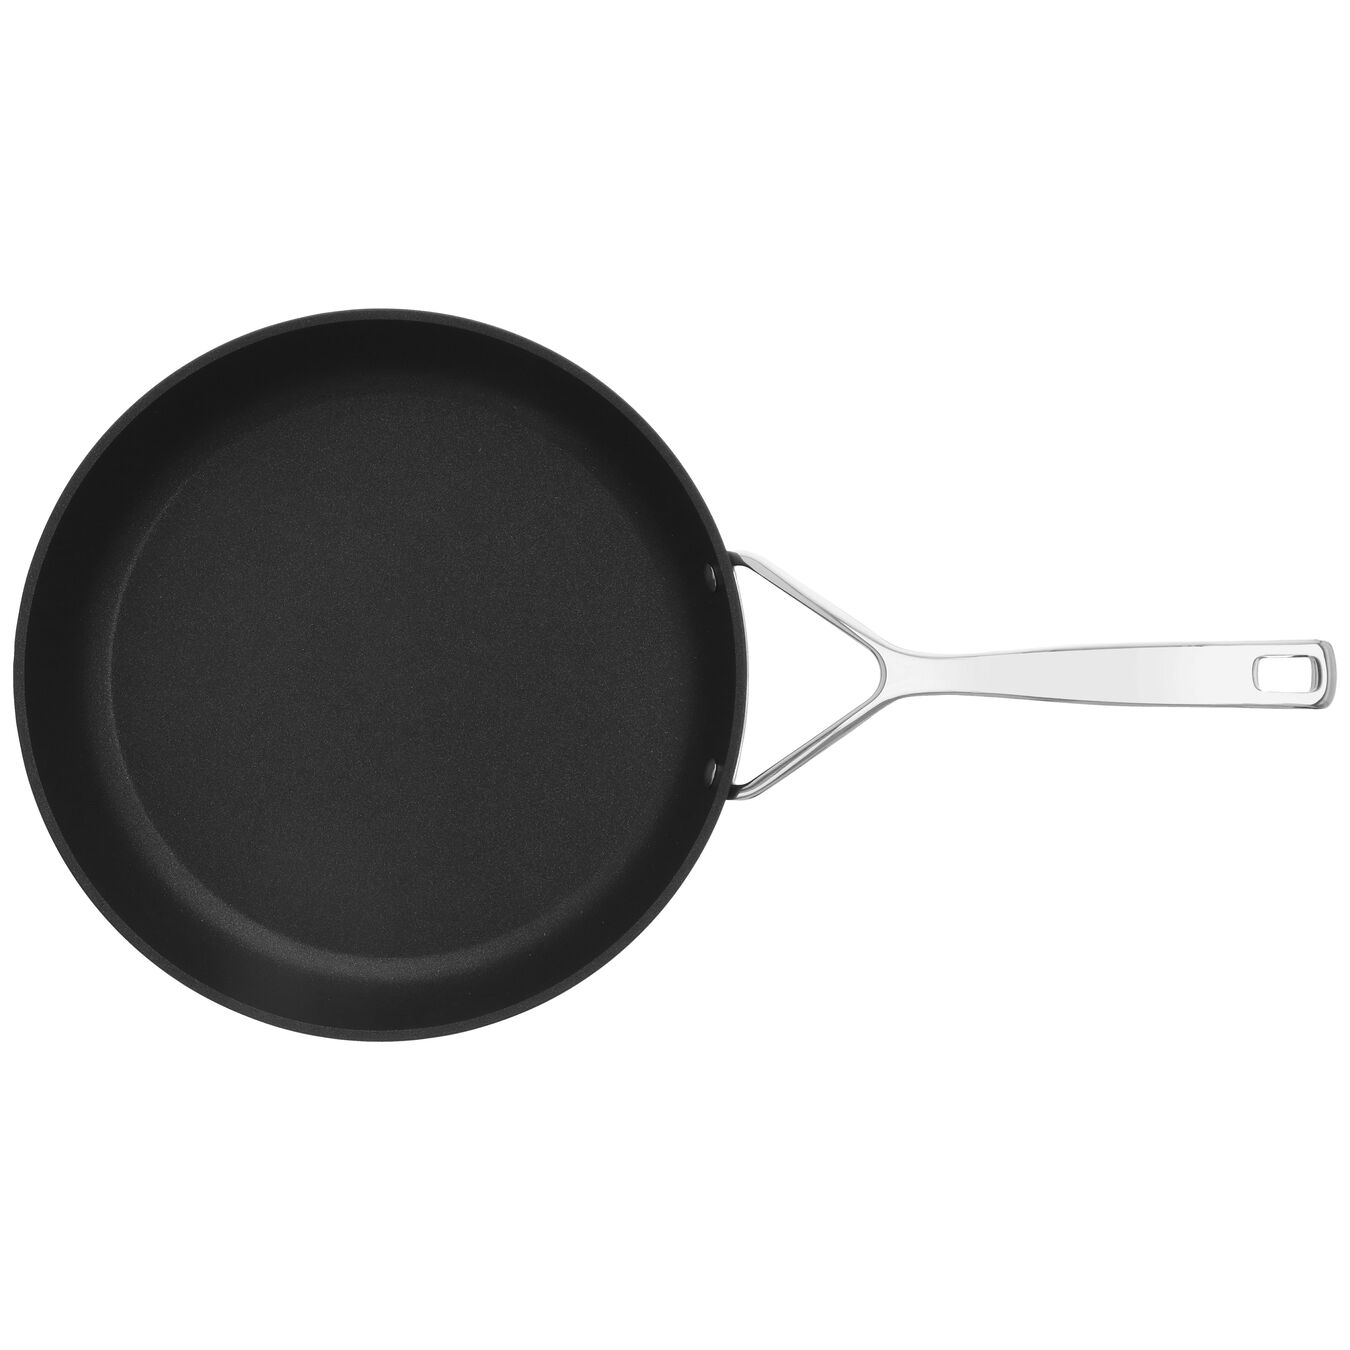 28 cm Aluminium Frying pan silver-black,,large 4